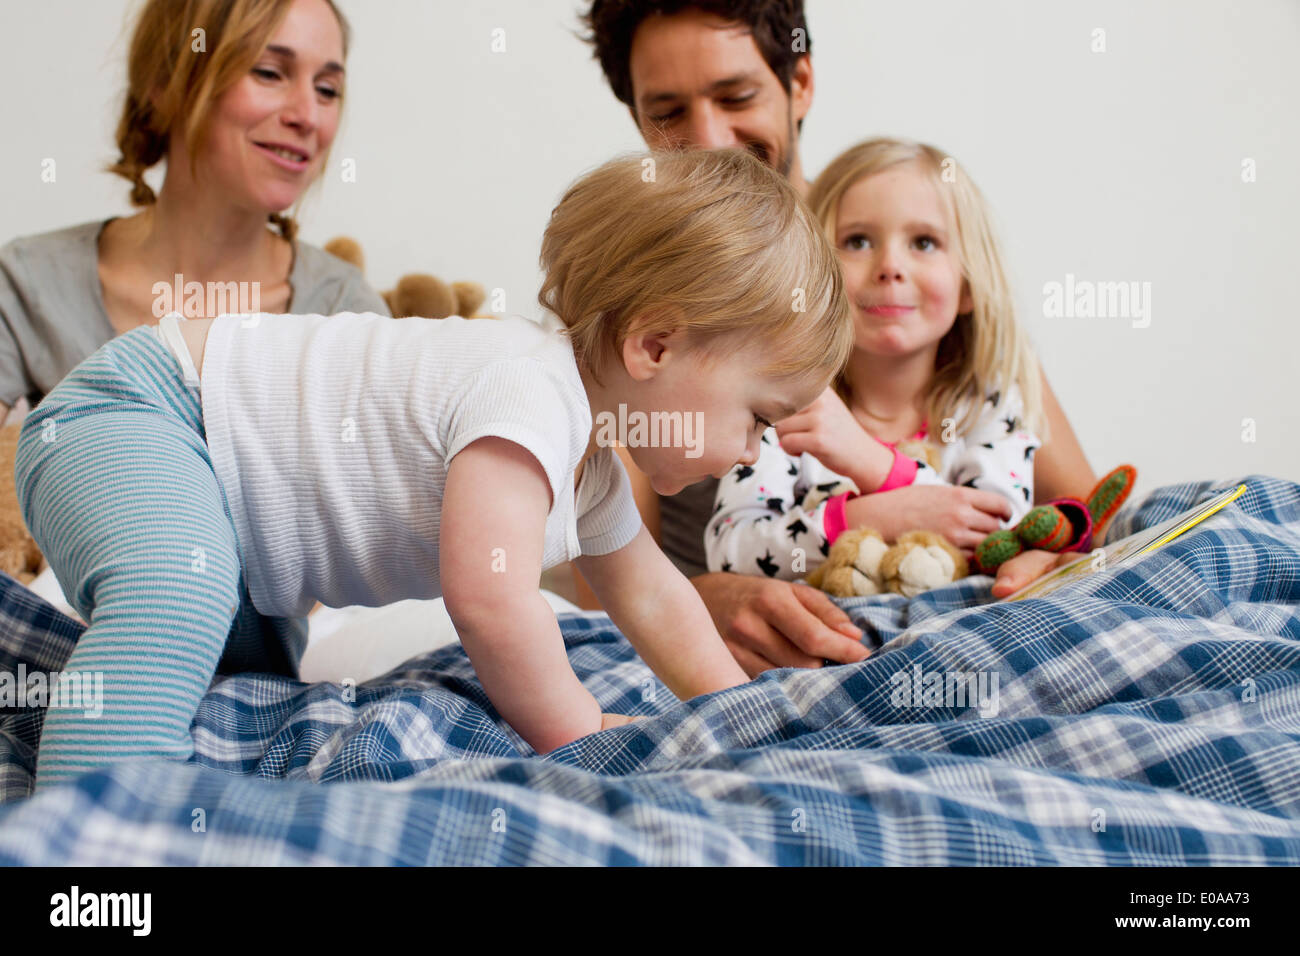 Un an baby girl de ramper sur le lit des parents Banque D'Images